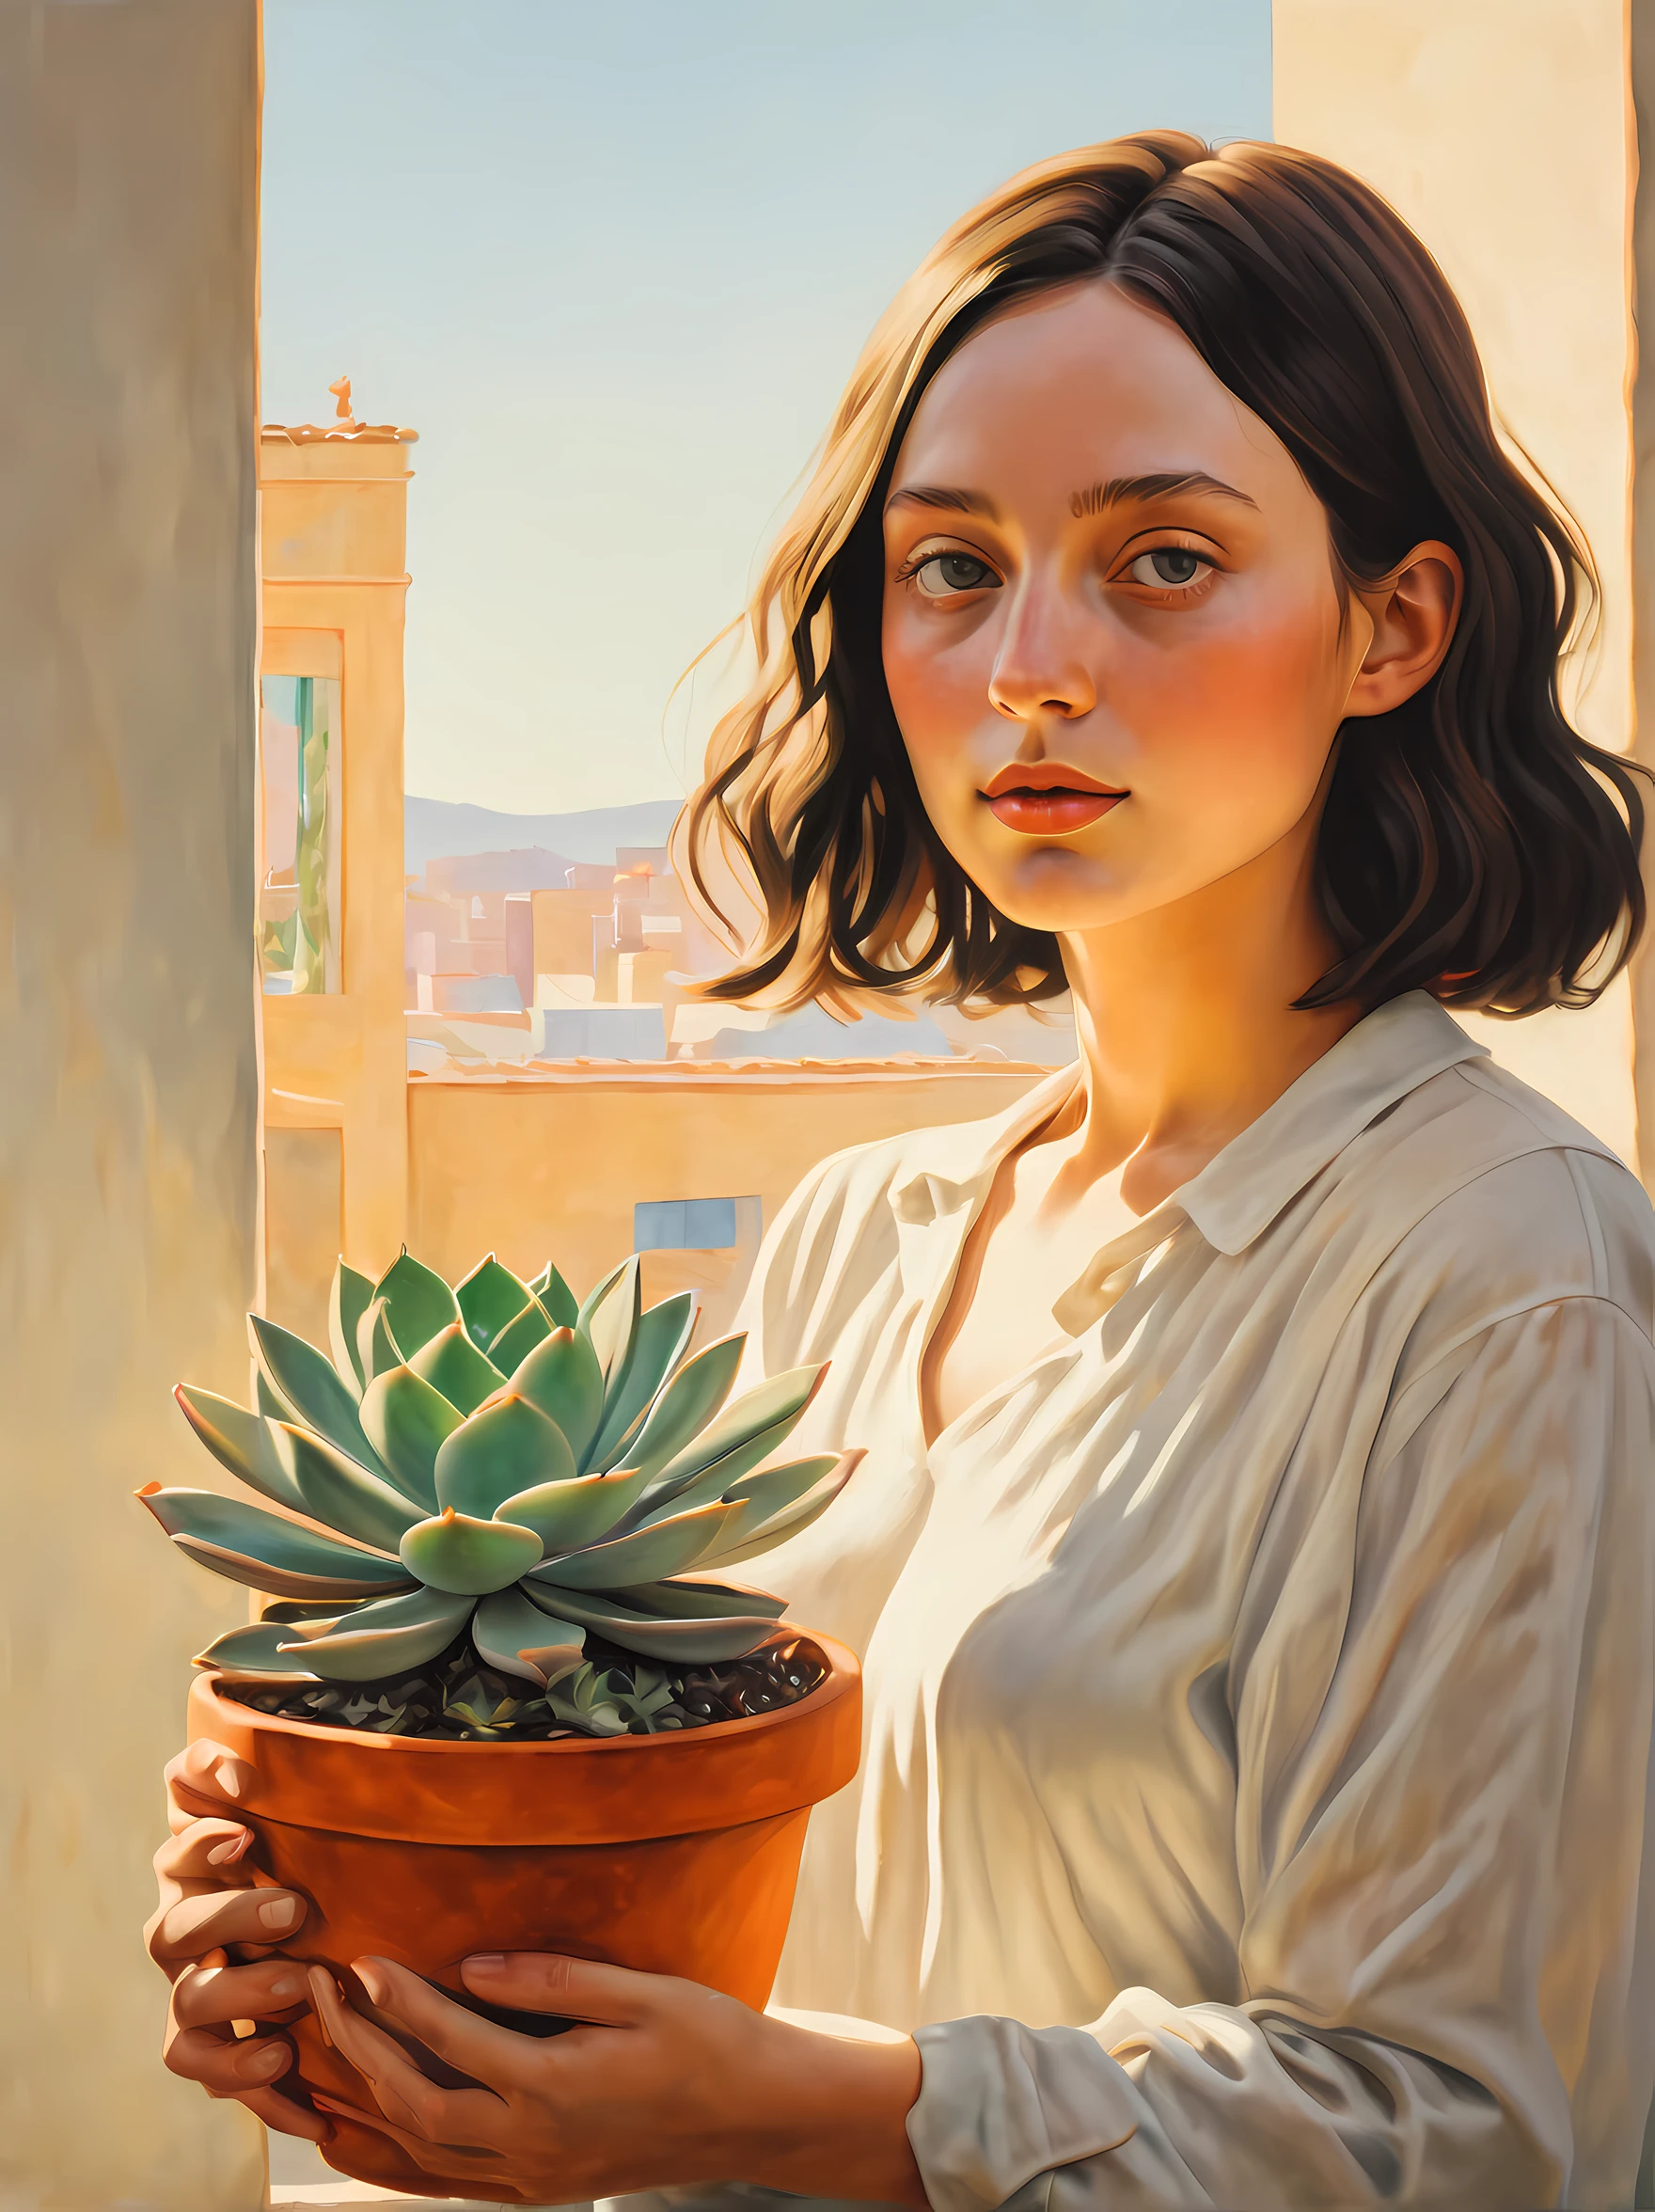 記憶に残るシーンからインスピレーションを得た息を呑むような絵画 "レオン: プロフェッショナル" 若い女性の主人公が植木鉢の中の多肉植物を優しく抱いている, 暖かい太陽の光を浴びて. アーティストは植物の鮮やかな色彩と複雑な細部を巧みに表現している。, それを作品の焦点にする. この絵は静けさと平穏さを醸し出している, 自然の美しさと人間と植物の繊細なつながりを鑑賞者に感じてもらう. 有名な現代芸術家ジョージア・オキーフによって制作されました, この傑作は、日常の瞬間に見られるシンプルでありながら深遠な美しさを讃えています，((最高品質)), ((傑作)), ((現実的))，軸対称，解剖学的に正しい，